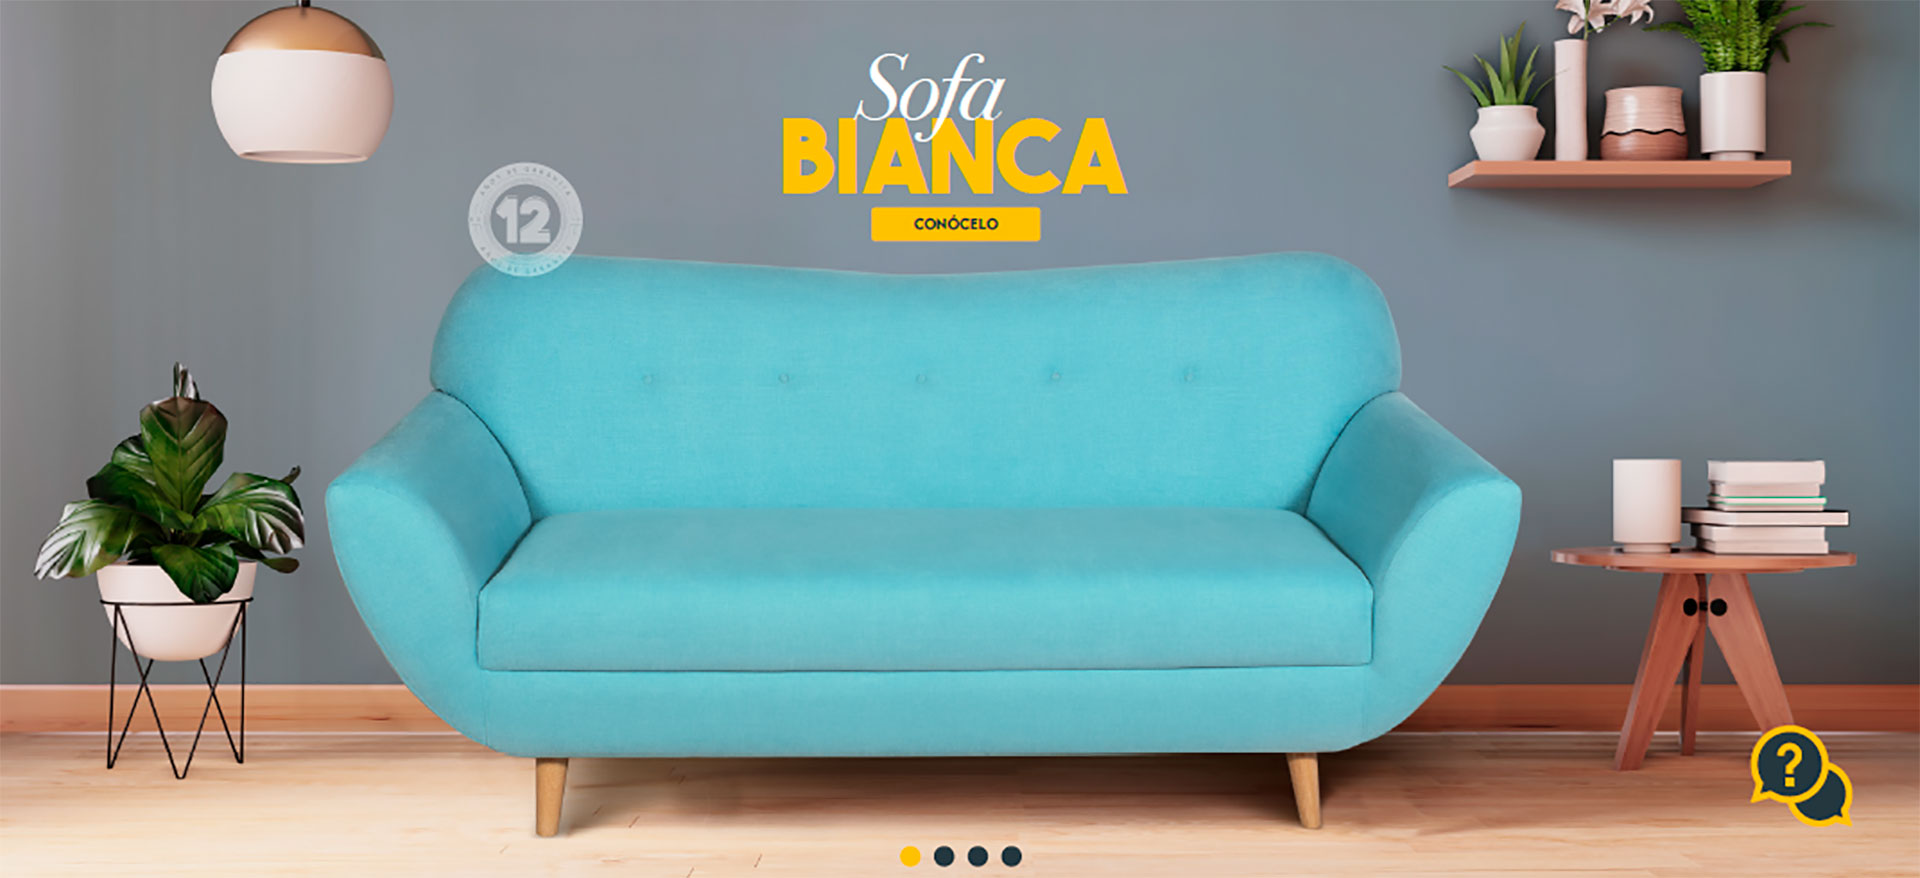 sofa-bianca-bodega-del-mueble-ejemplo